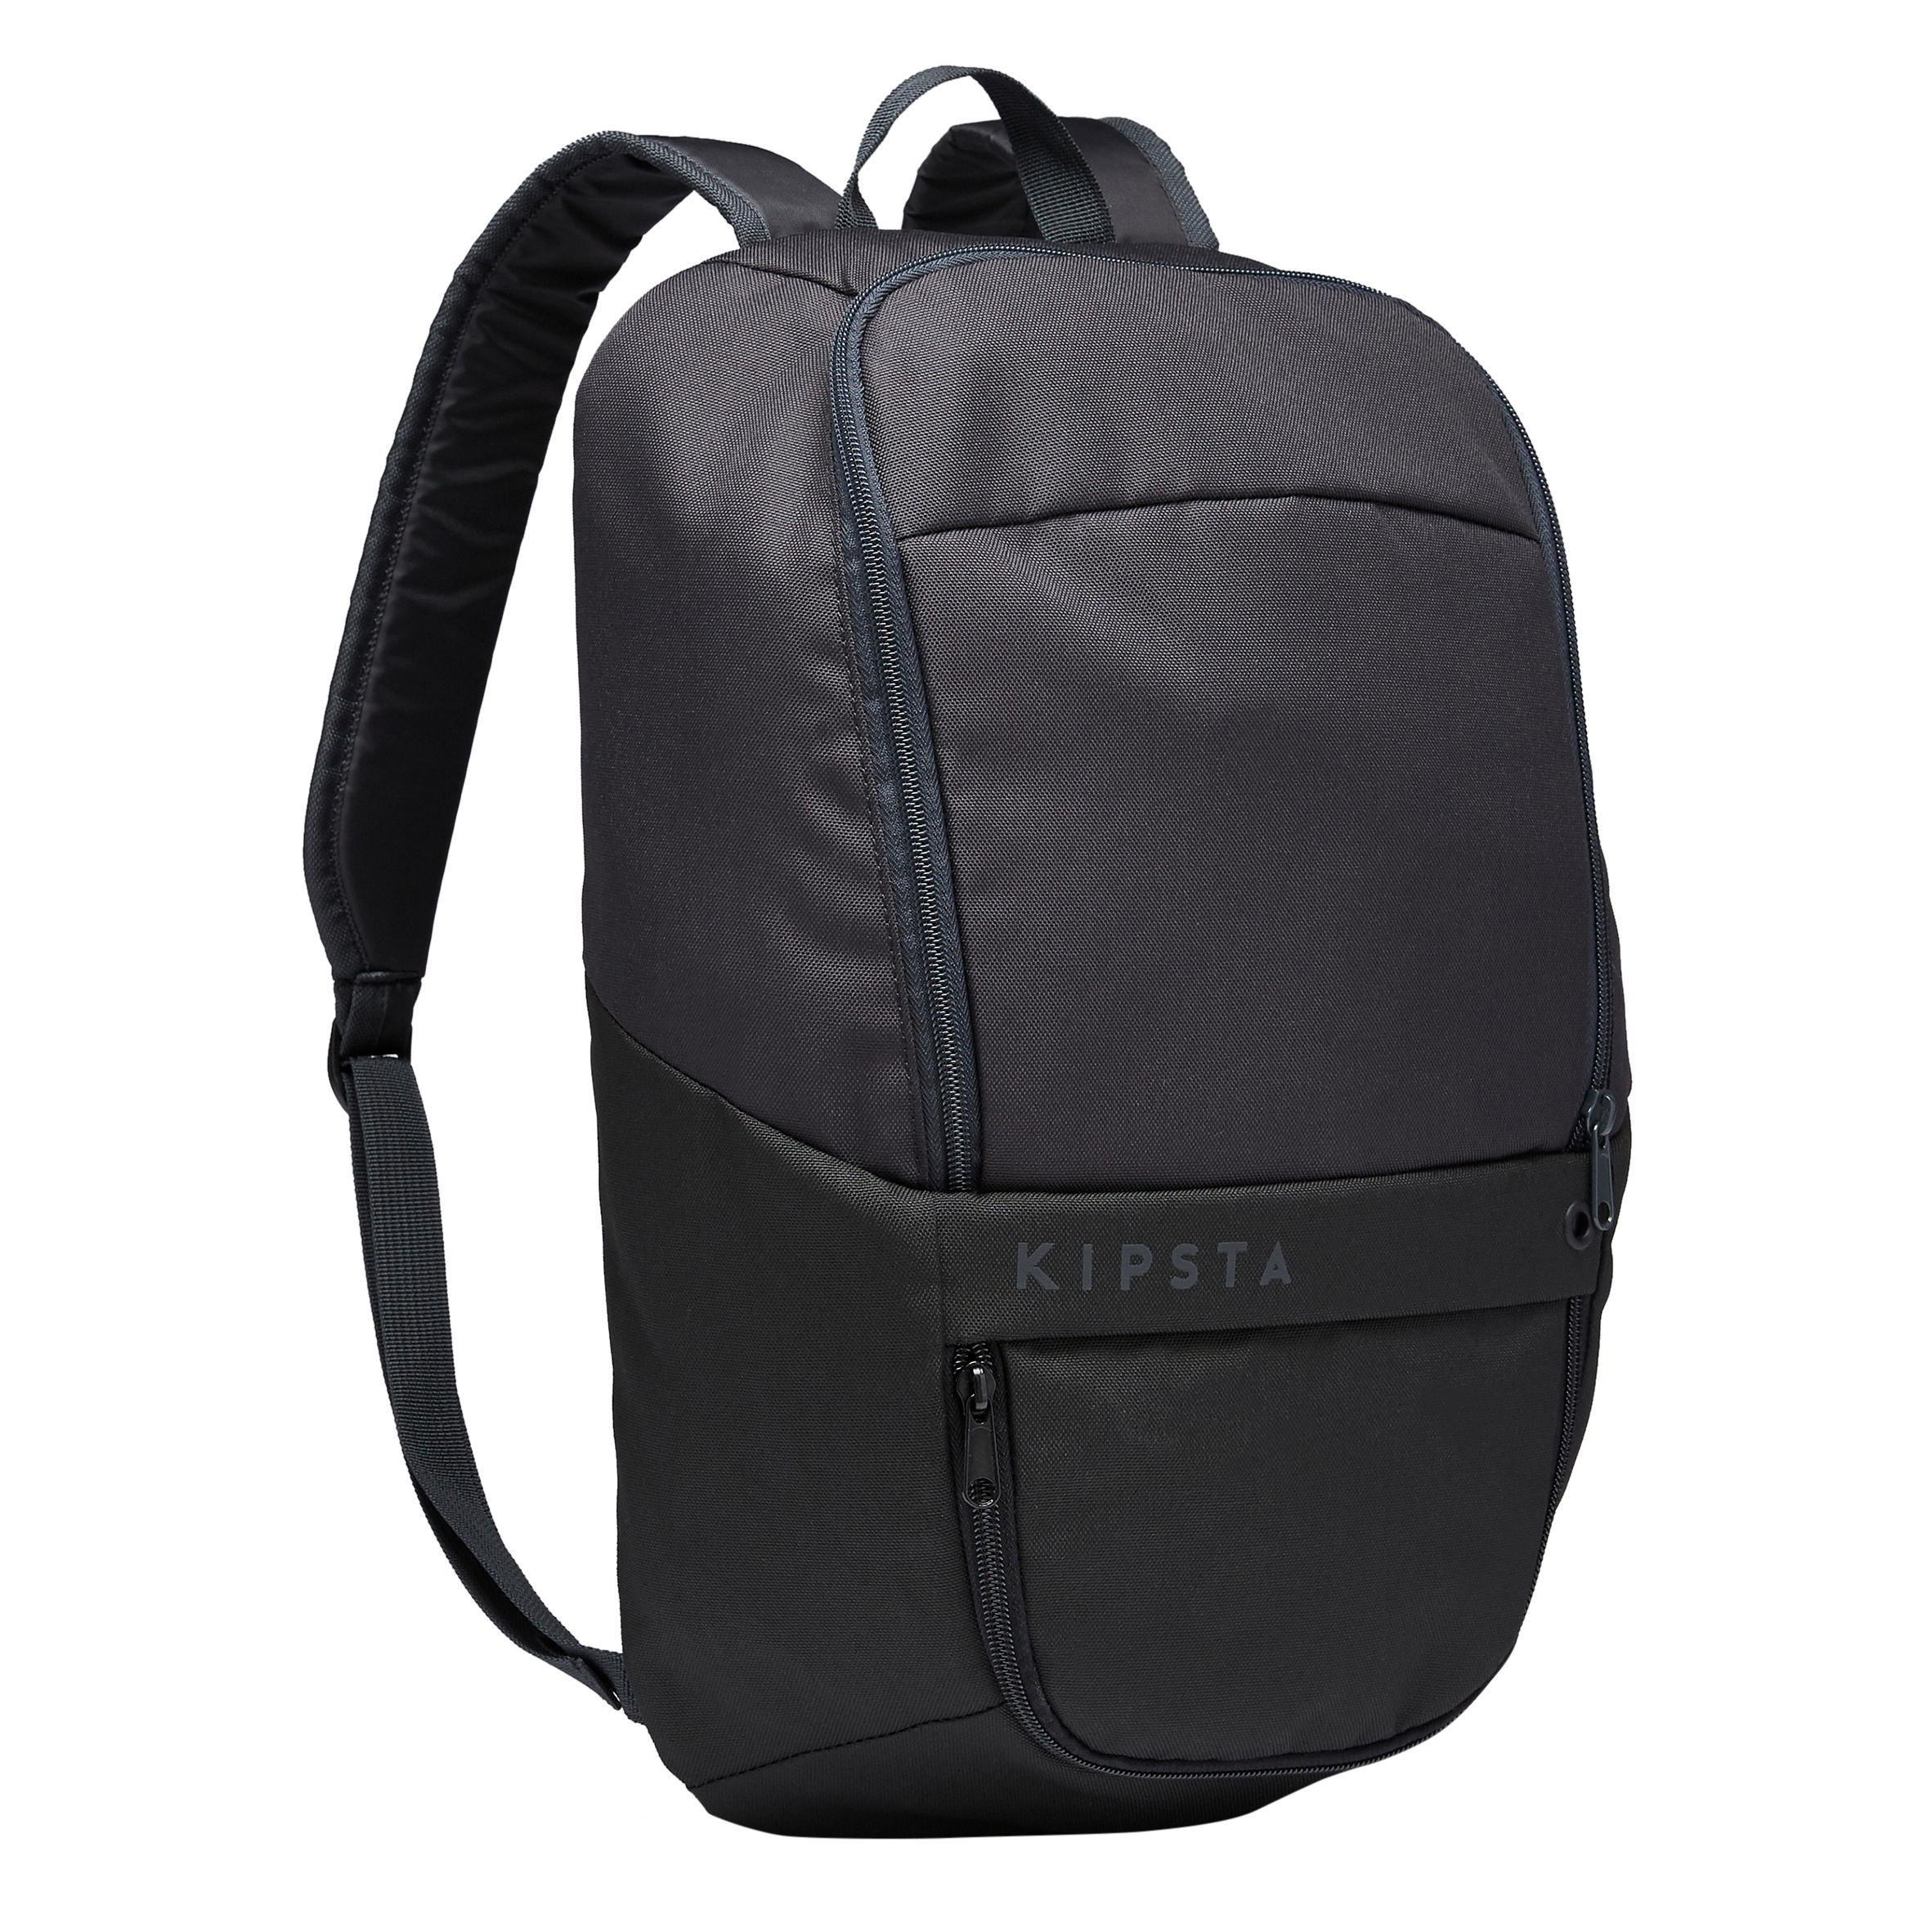 ULPP 17-Litre Backpack - Black 1/11